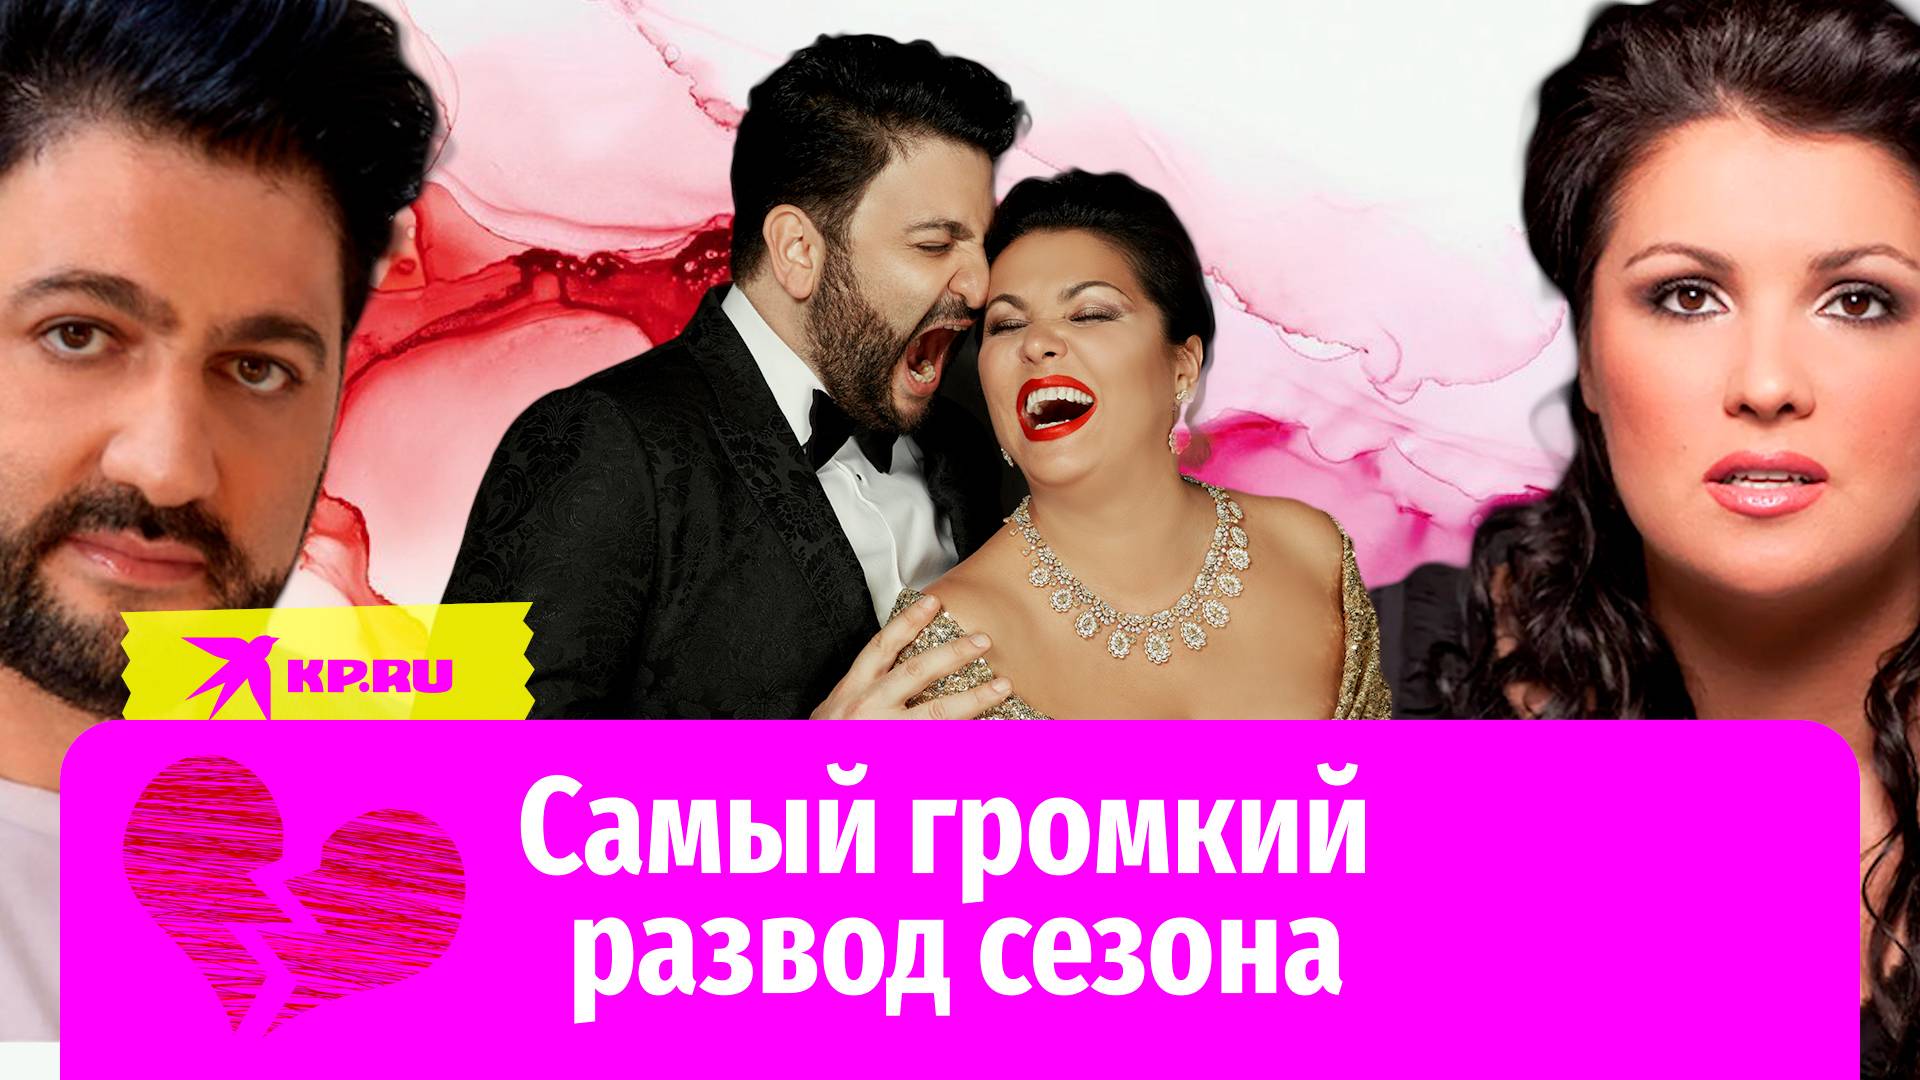 Сопрано Анна Нетребко и тенор Юсиф Эйвазов заявили о расторжении брака